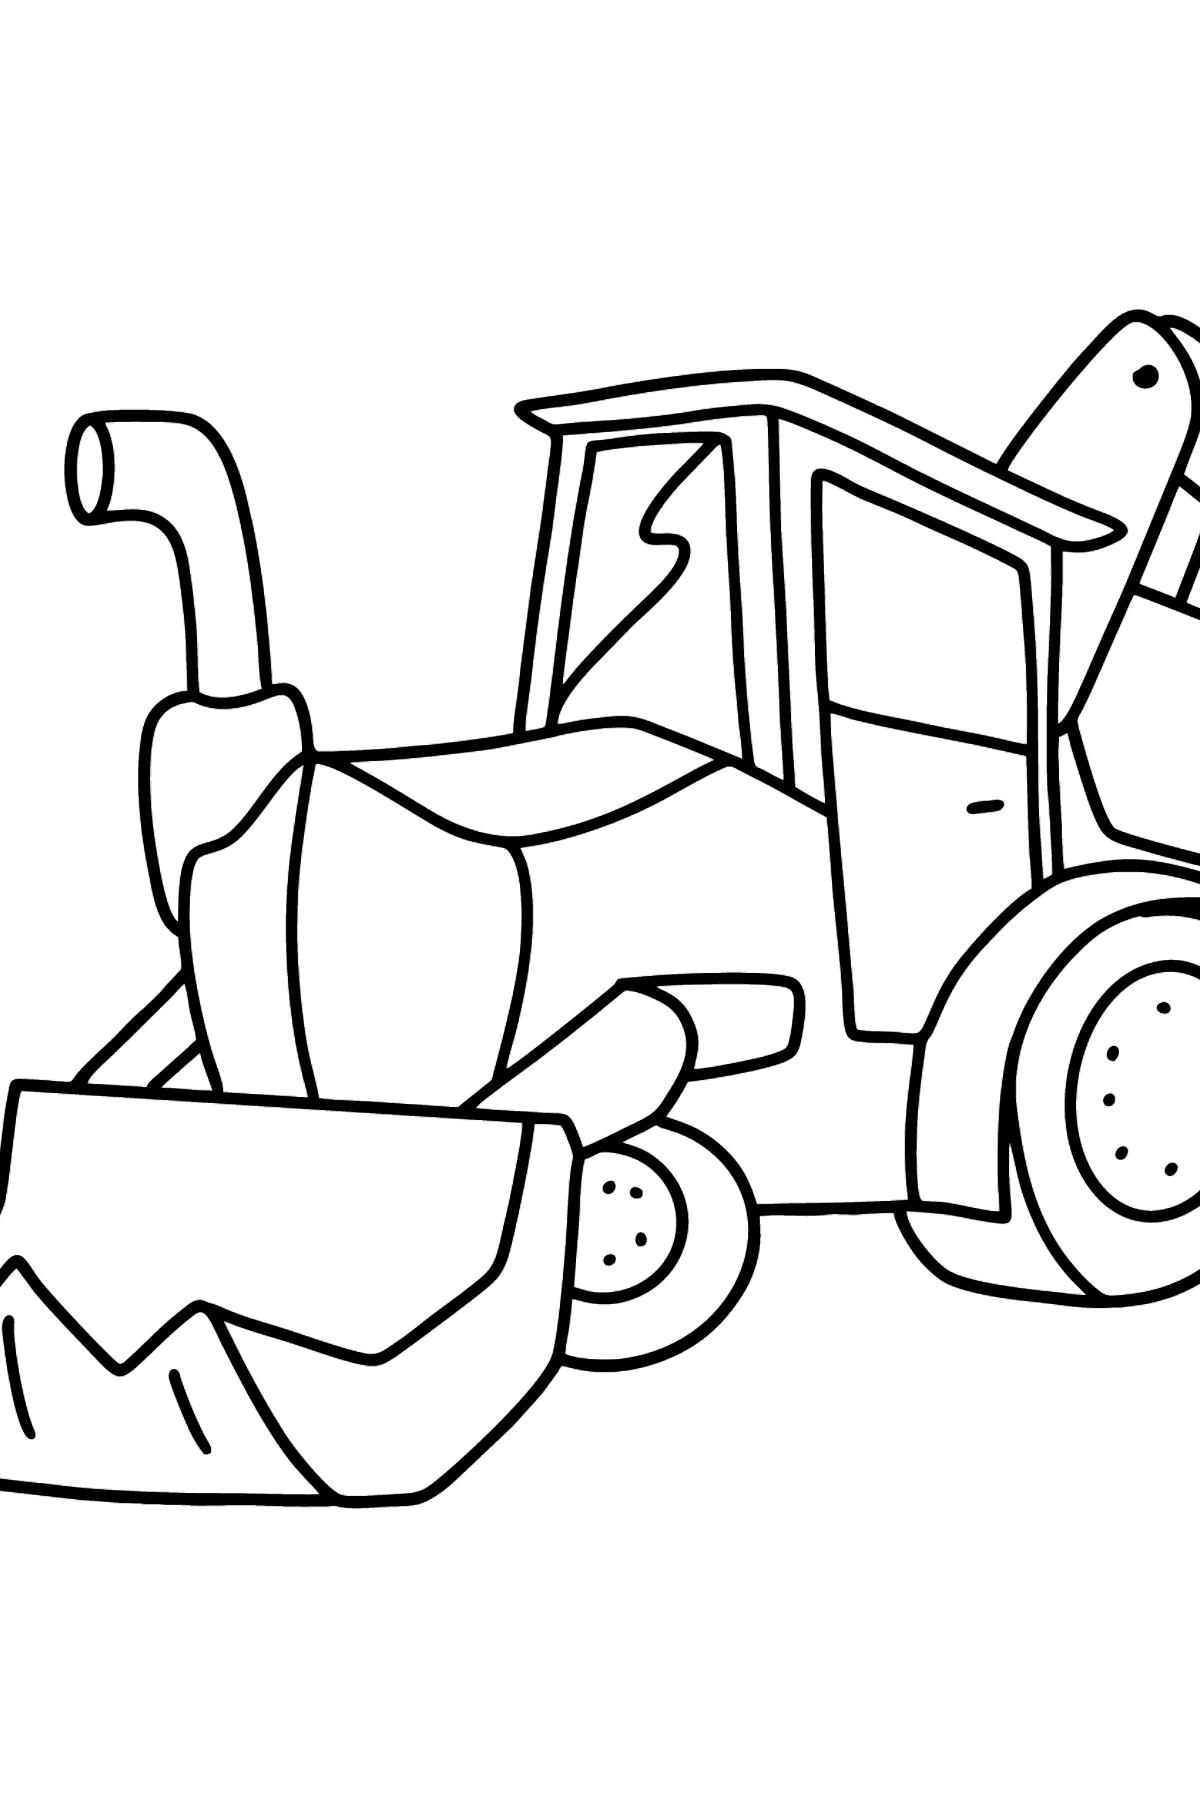 Kleurplaat tractor met twee bakken - kleurplaten voor kinderen